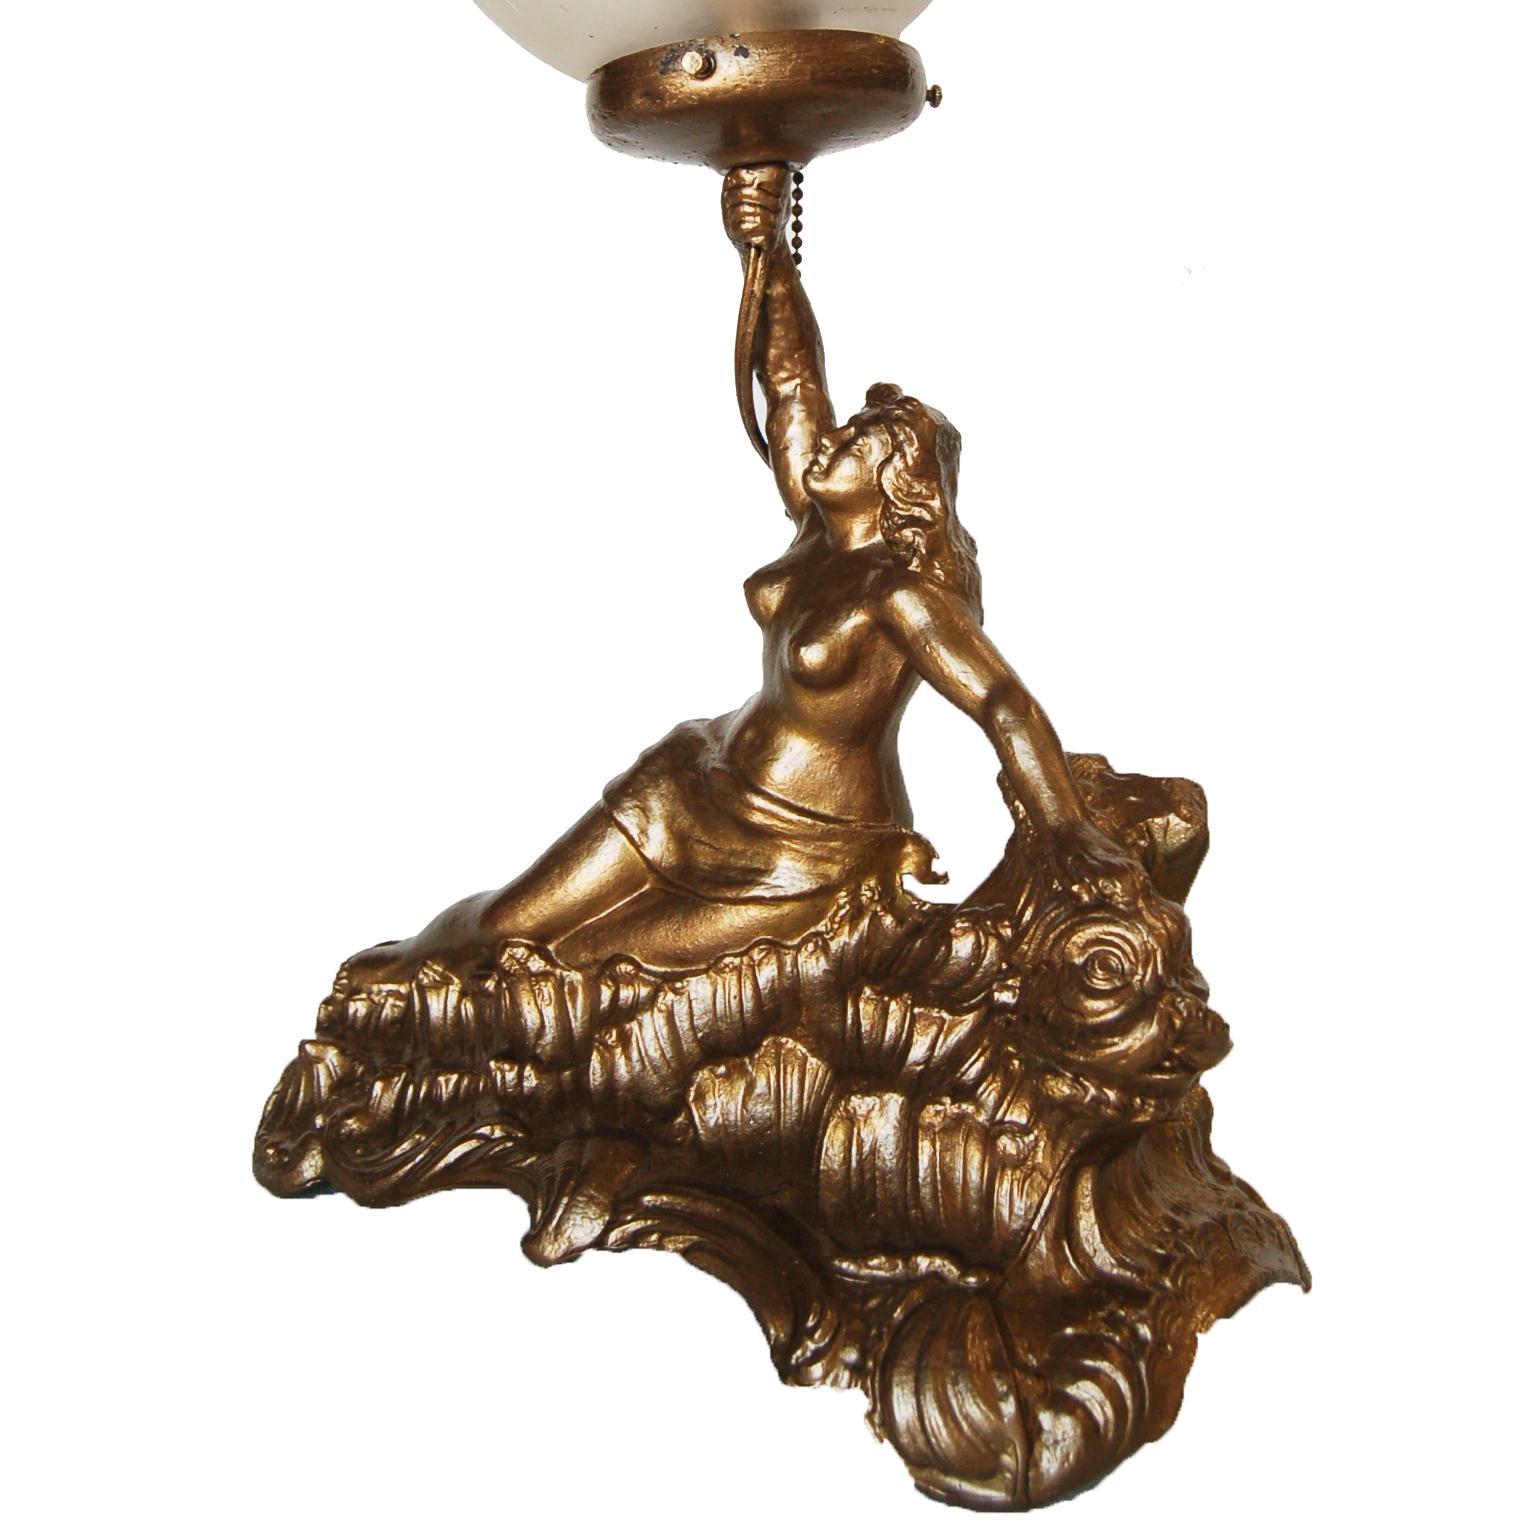 Lampe en métal coulé de style grec, de couleur dorée, avec globe en cristal taillé. 

Mesures : 12